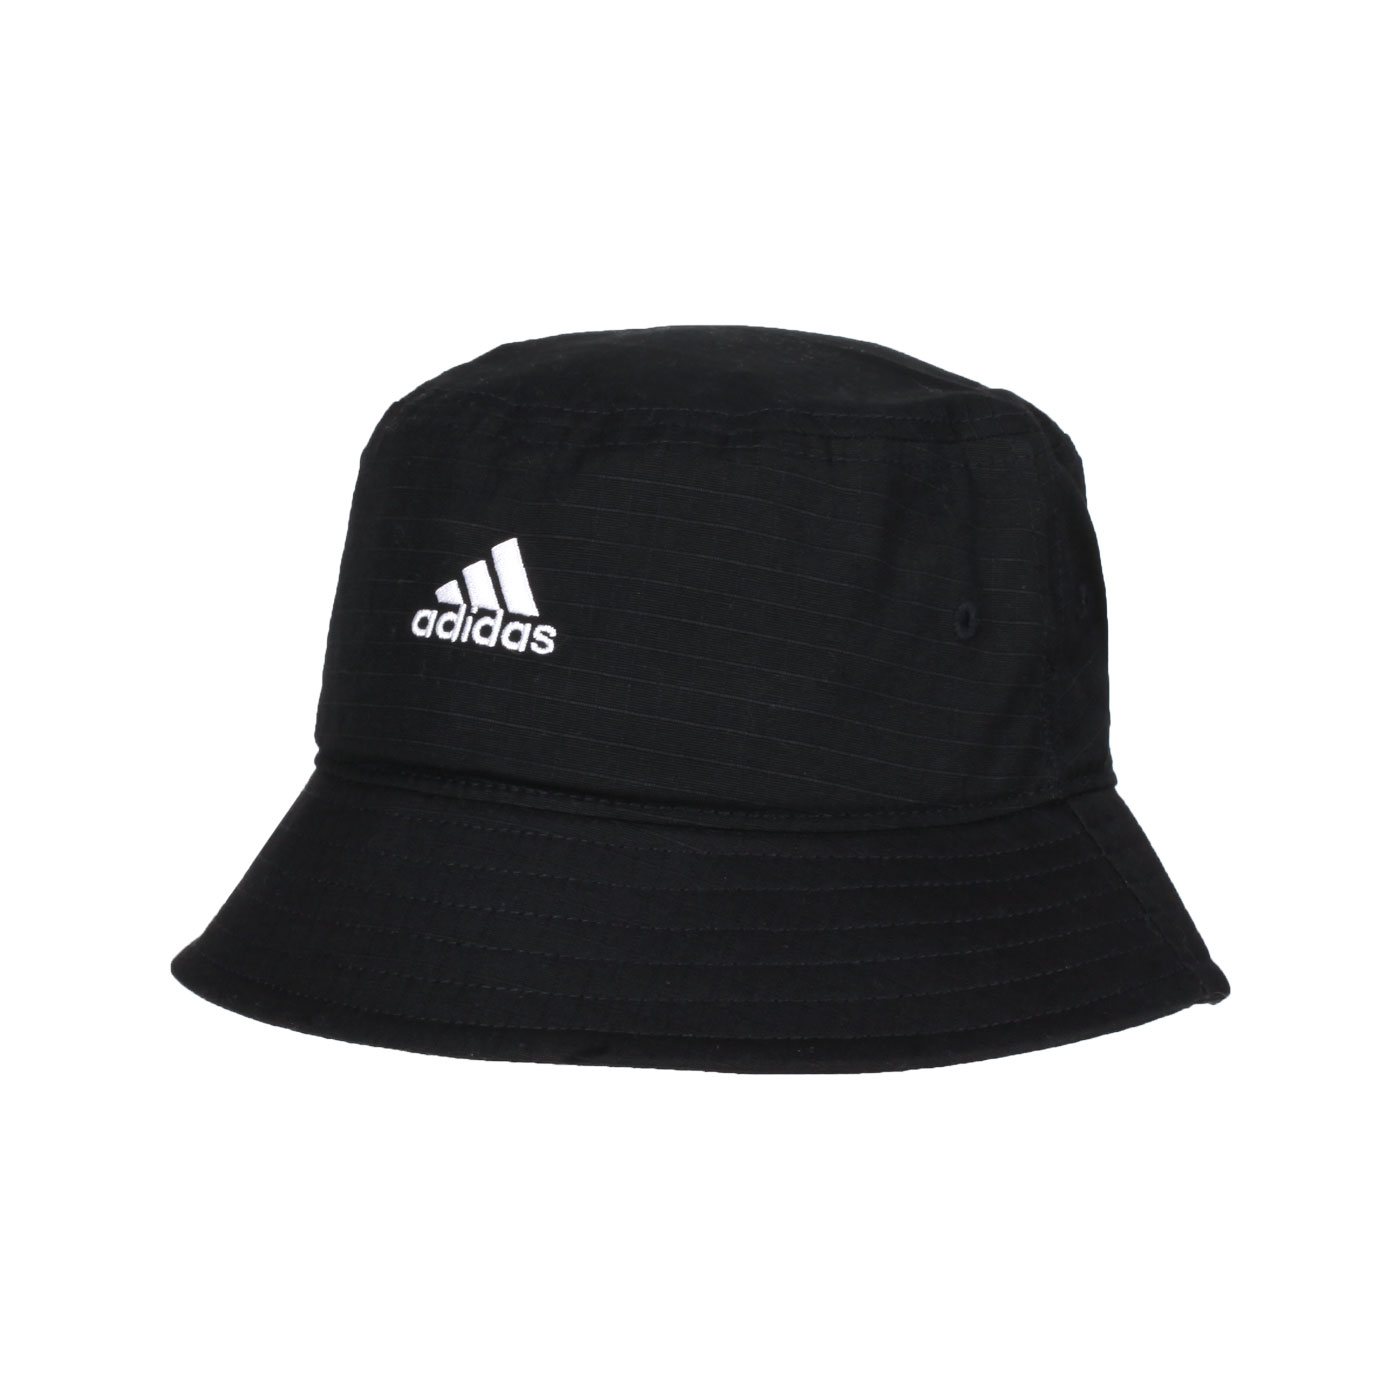 ADIDAS 漁夫帽 HT2029 - 黑白